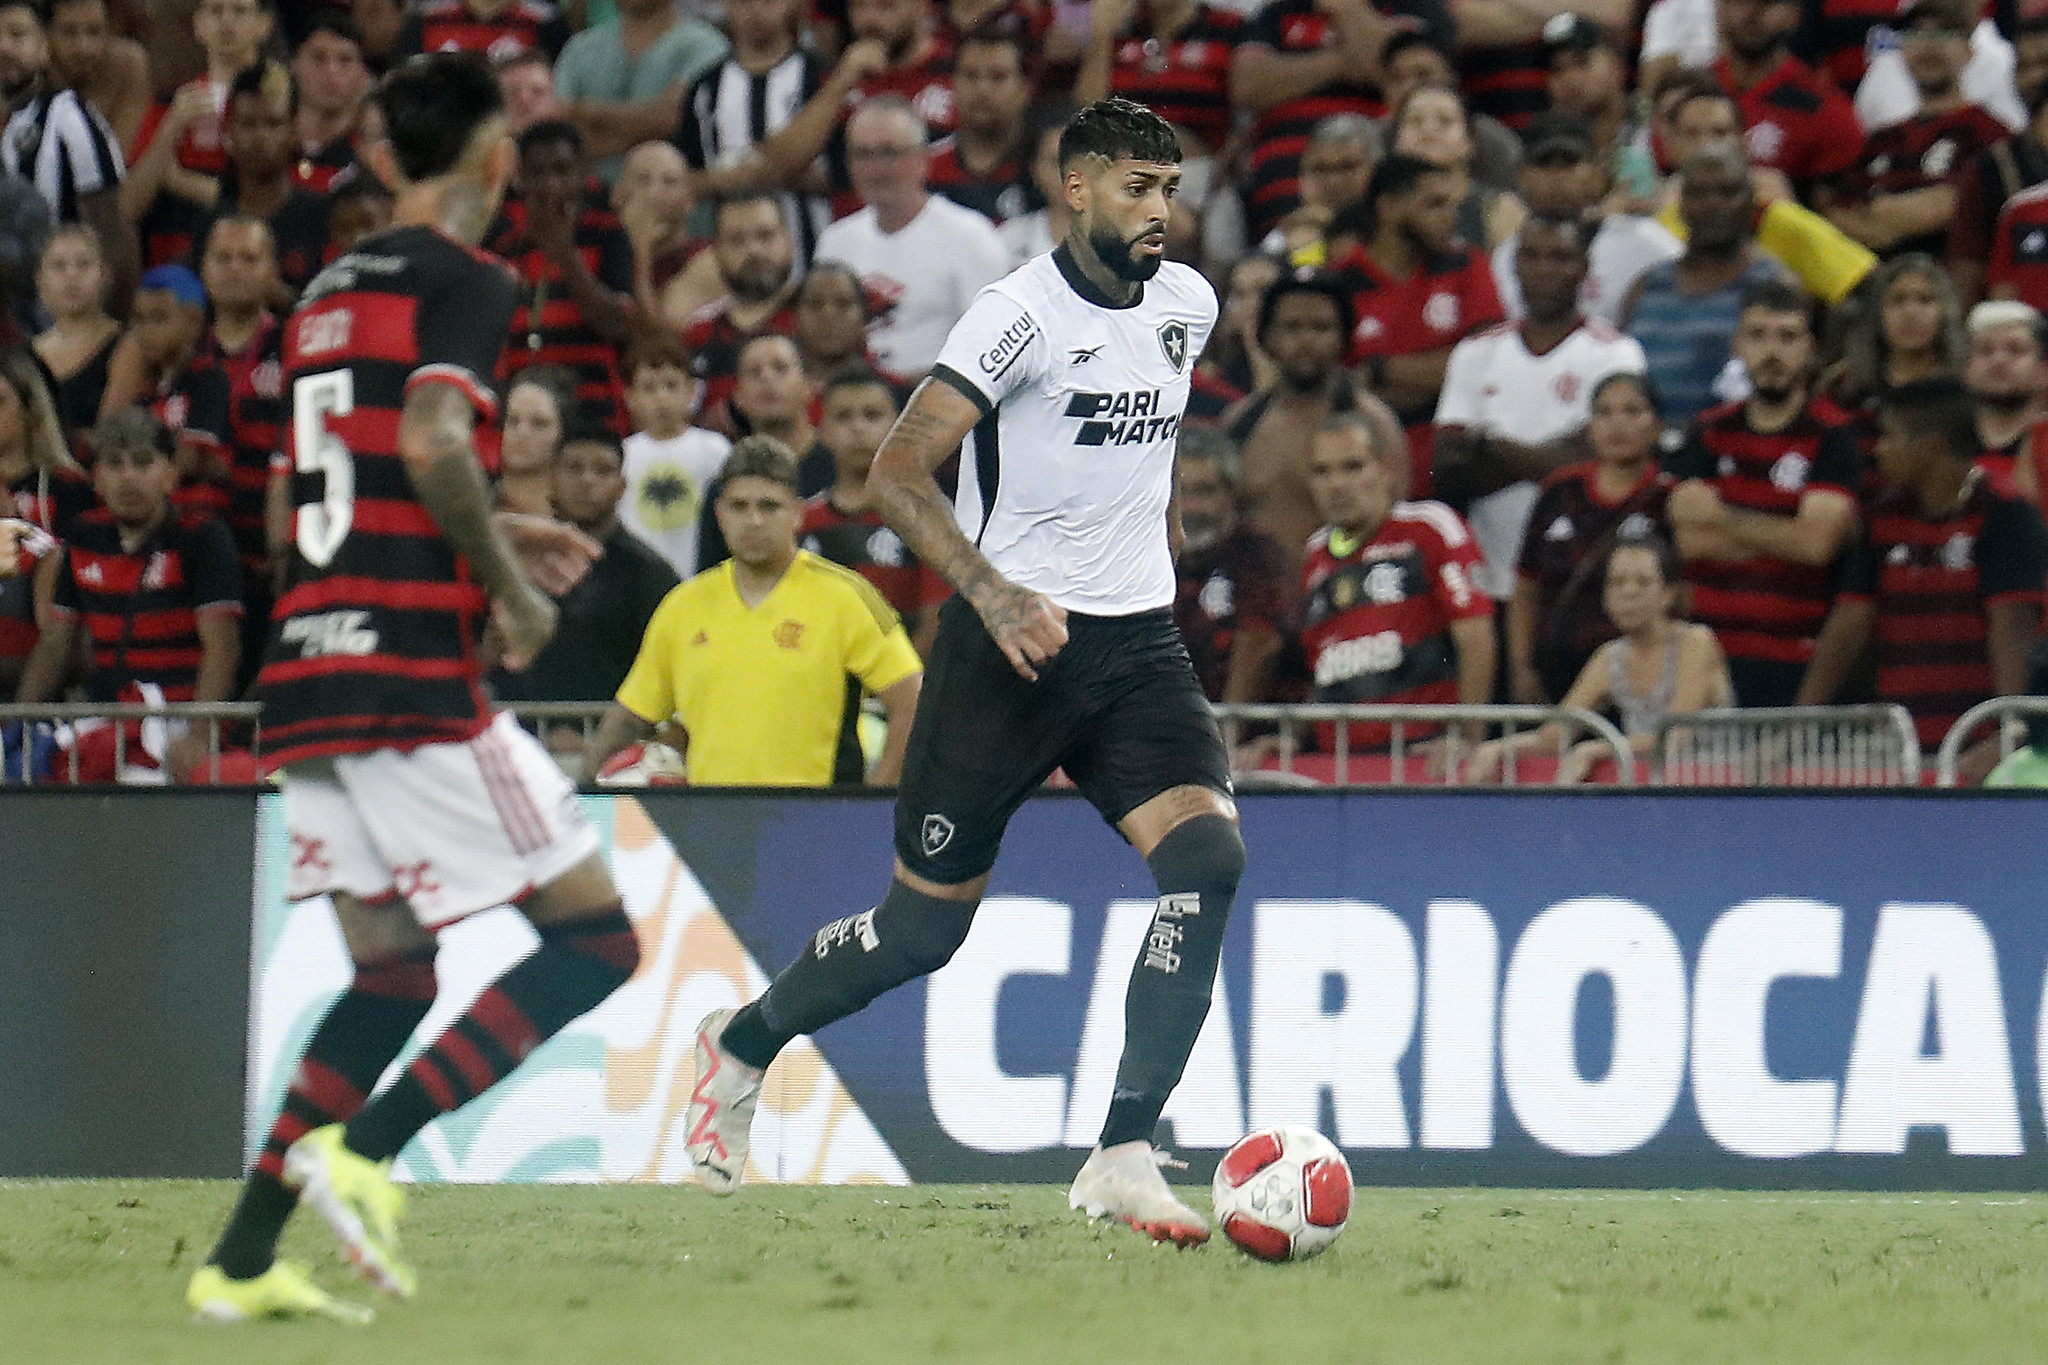 Alexander Barboza durante a partida diante do Flamengo (Foto: Vitor Silva/Botafogo)